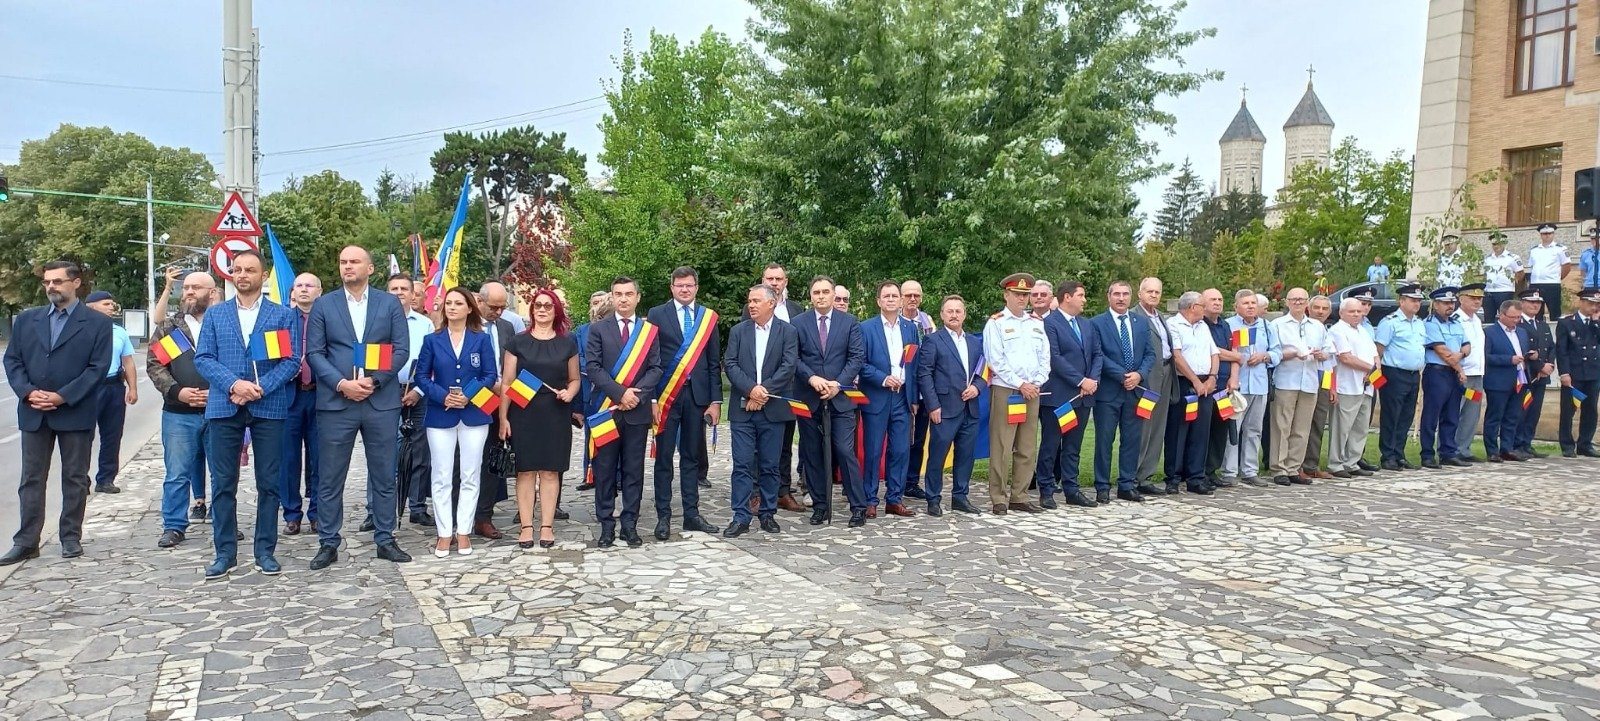  Ceremonie de celebrare a Zilei Imnului de Stat la Iași. Restrictii de circulatie.